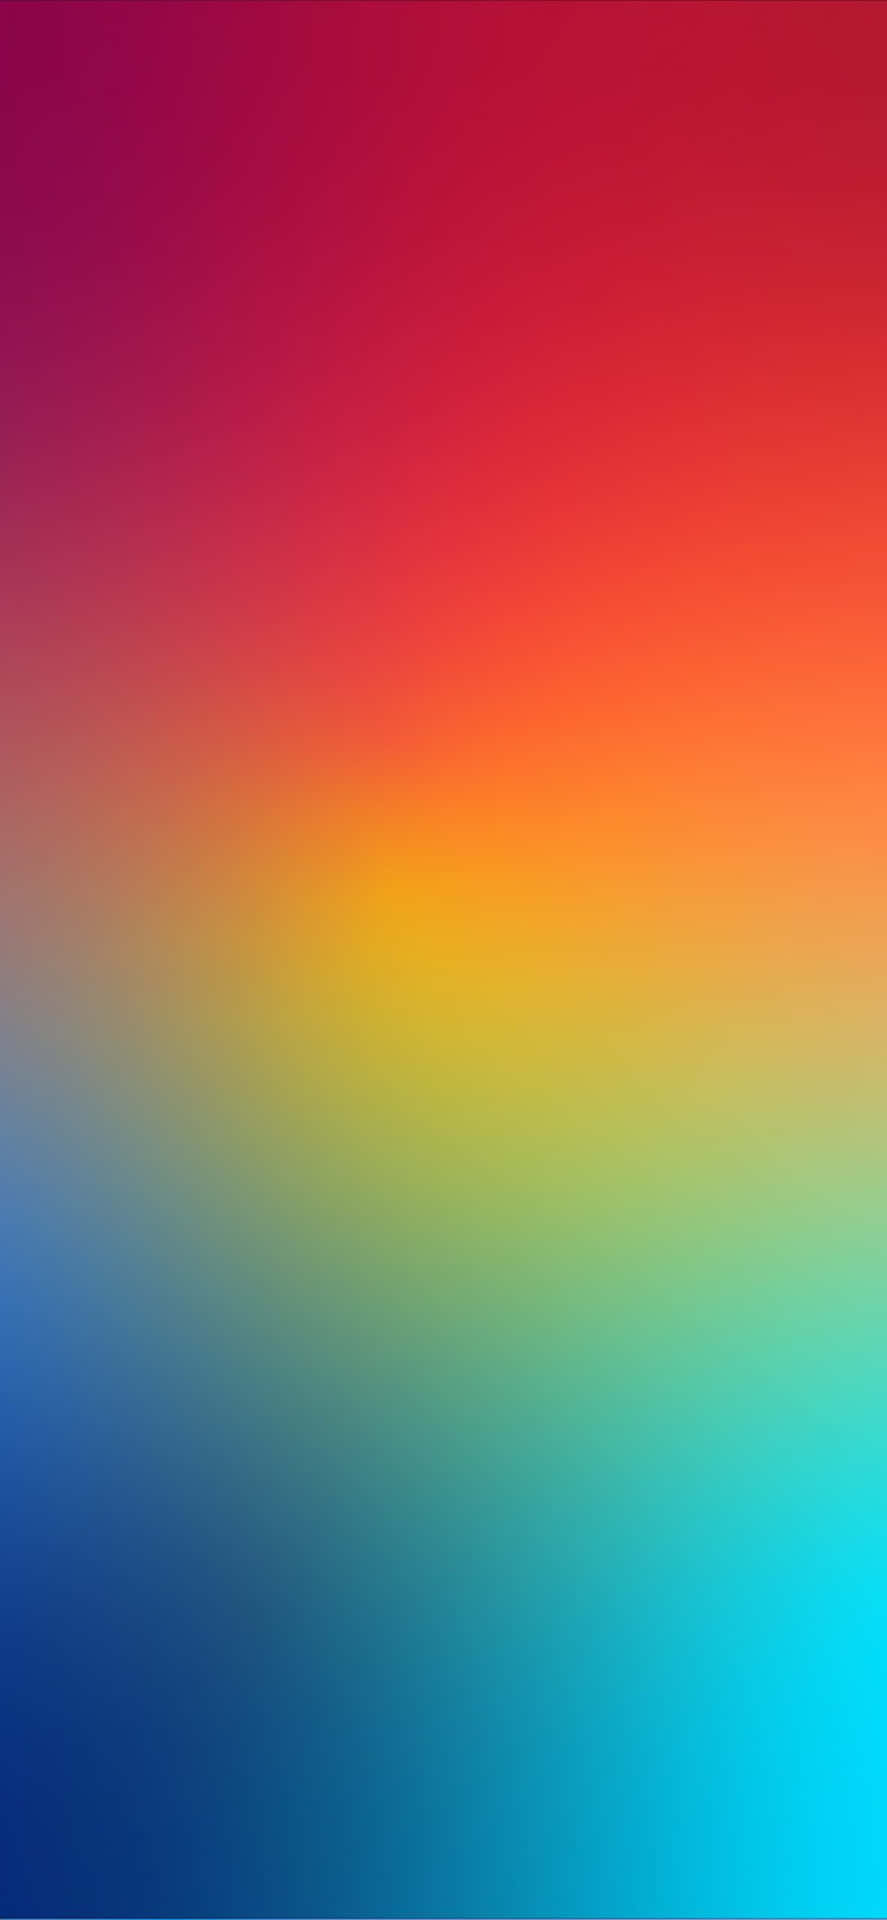 Einregenbogenfarbener Hintergrund Mit Einem Regenbogenfarbenen Verlauf